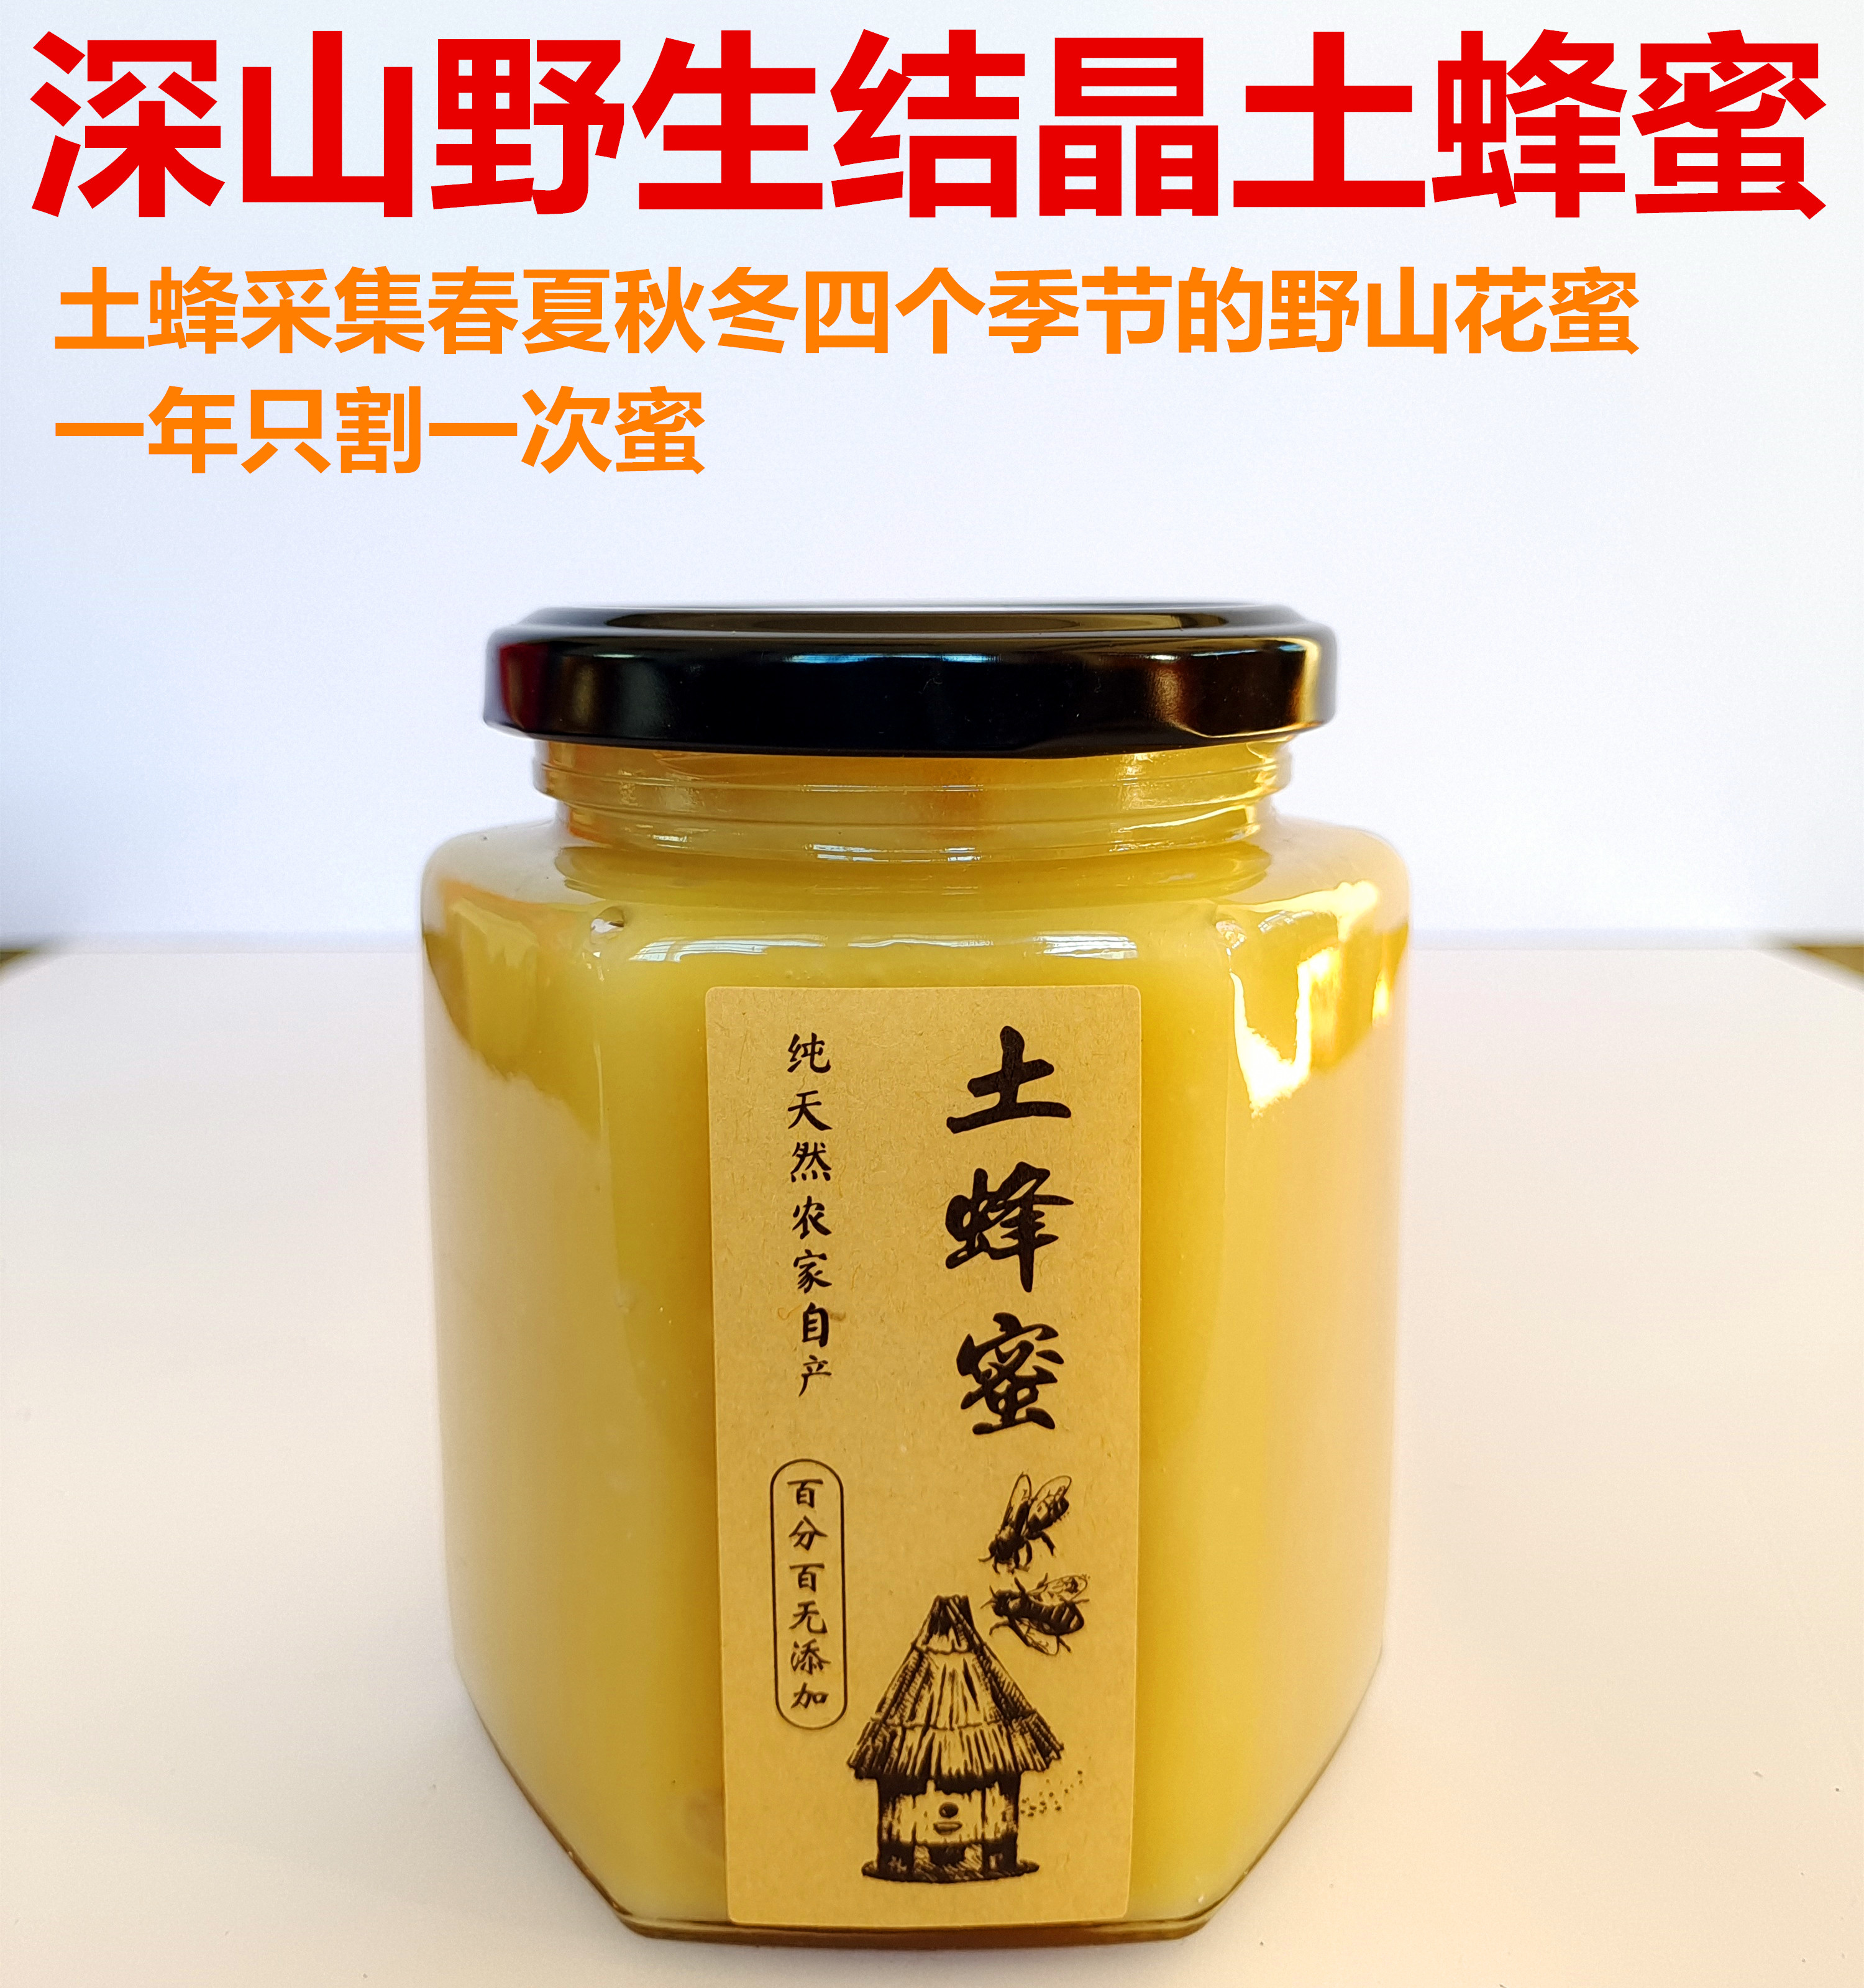 土蜂蜜高山结晶土蜂蜜500g(衢州市常山县晓华蜂业）纯正天然野蜂蜜纯蜂蜜